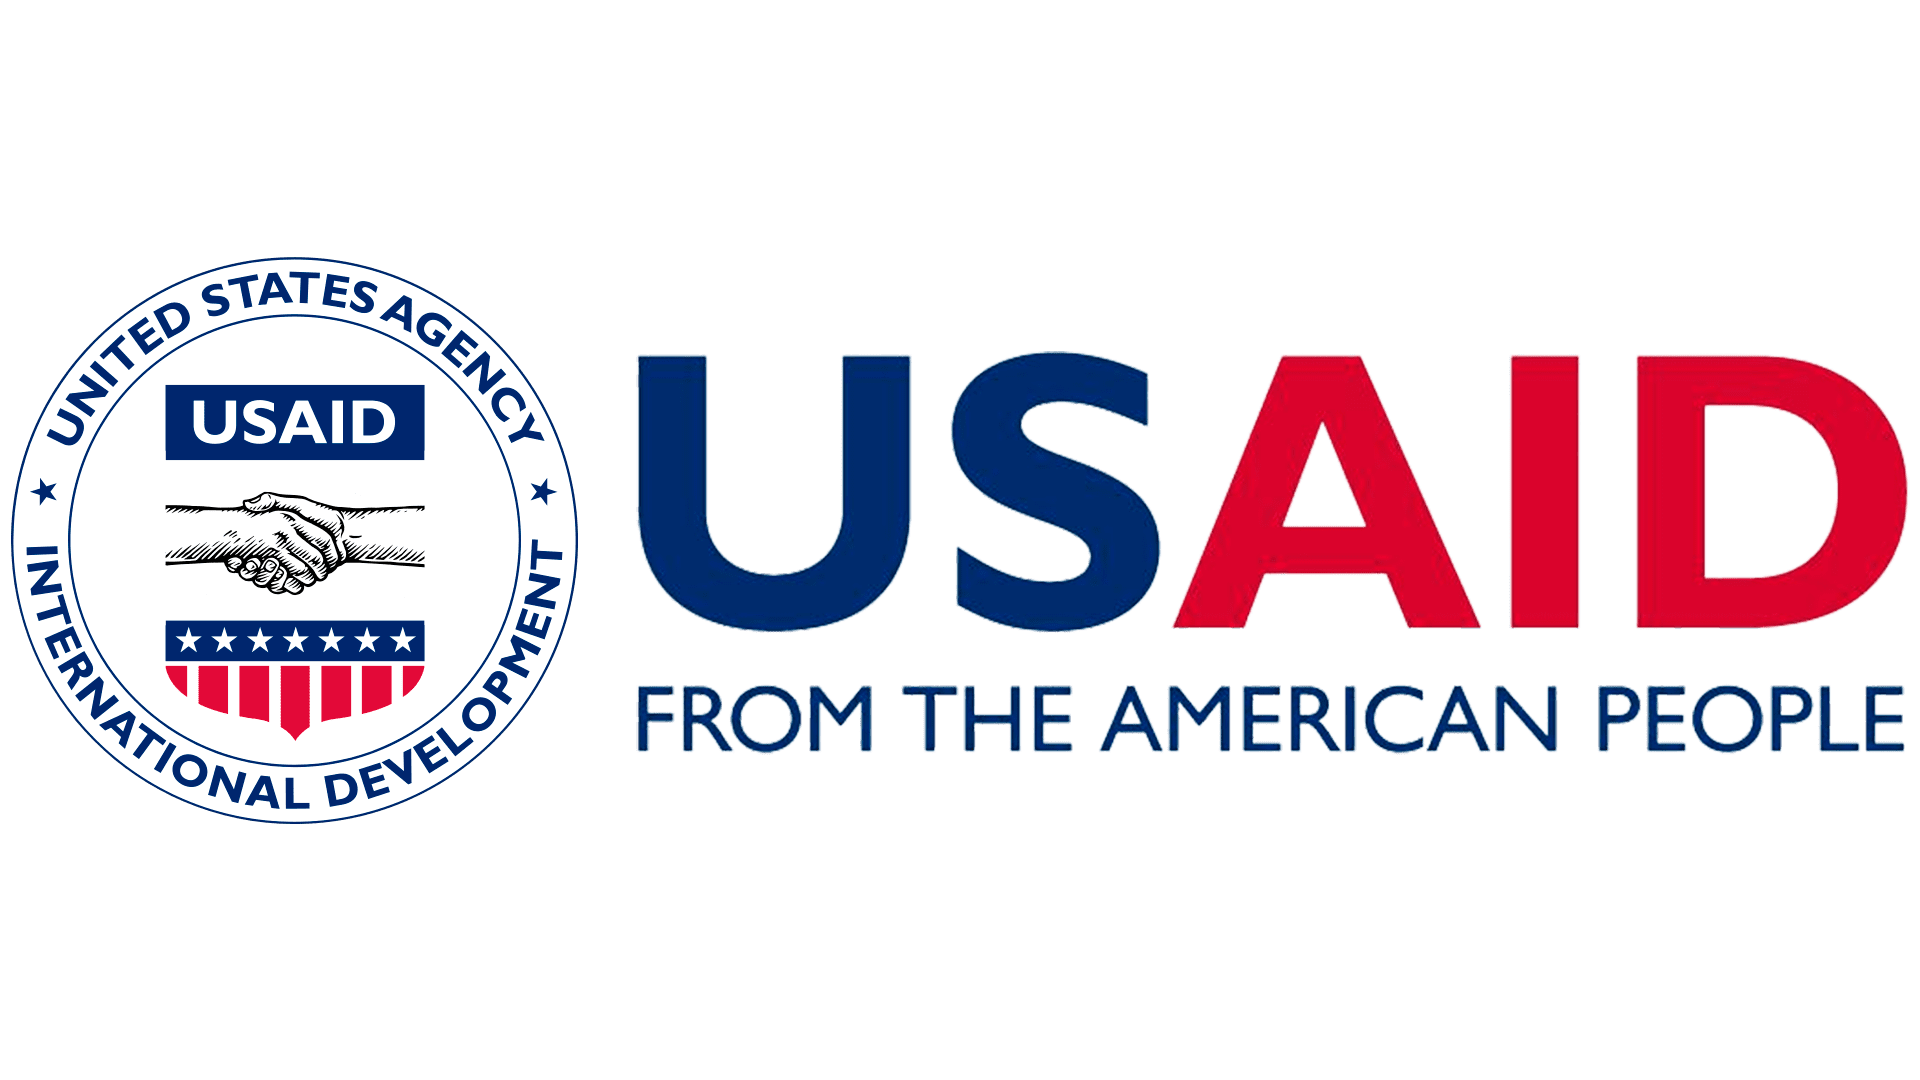 USAID's logo